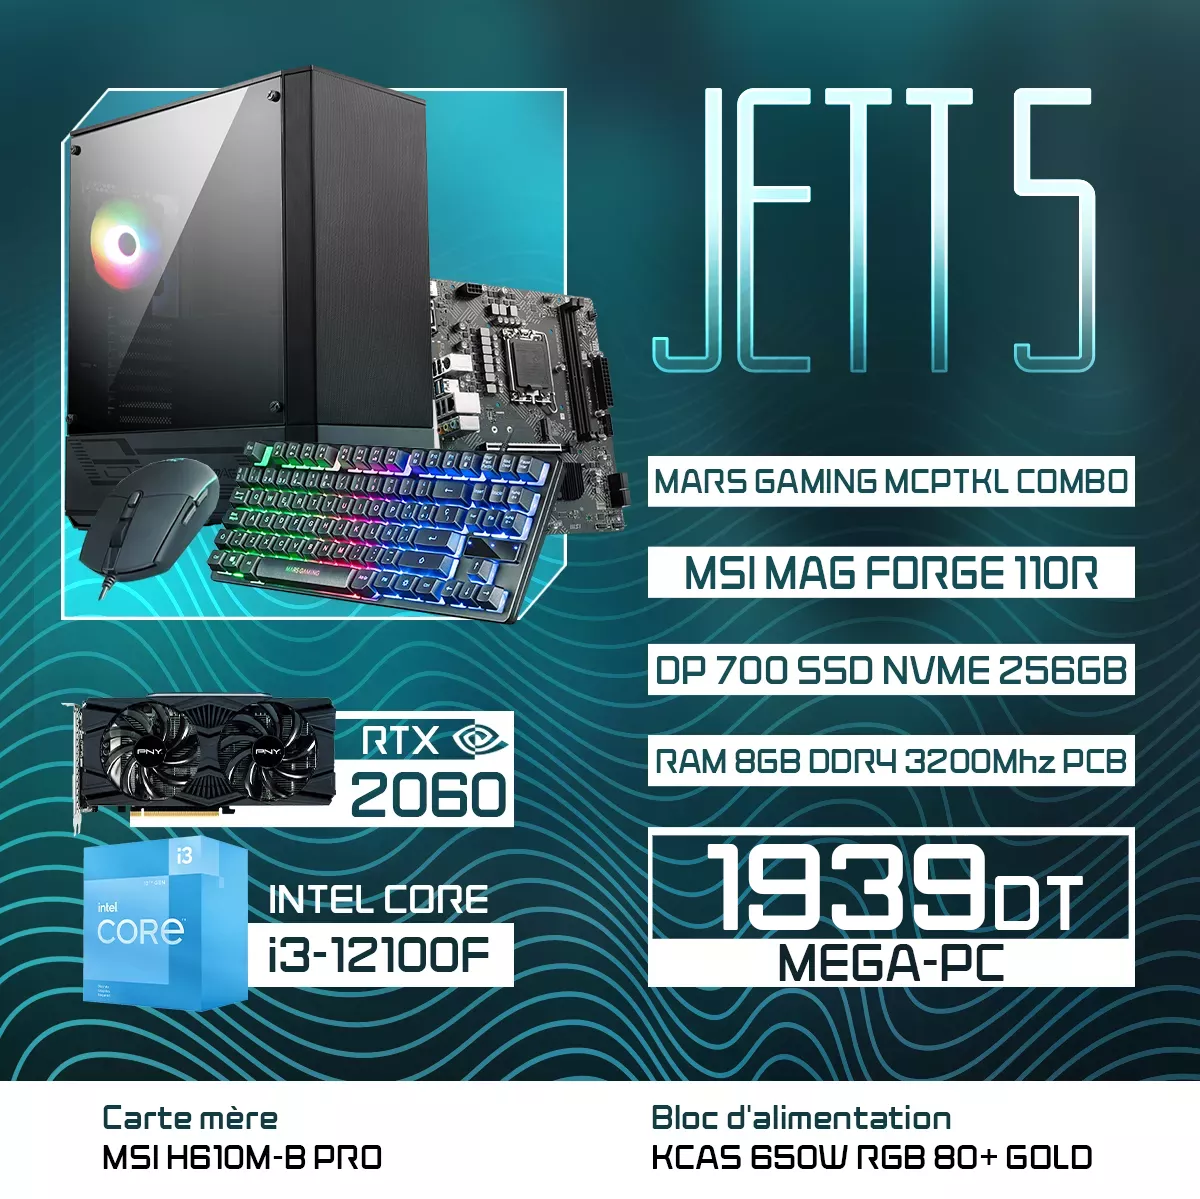 JETT 5 | i3-12100F | RTX 2060 | 8GB RAM | 256GB NVMe